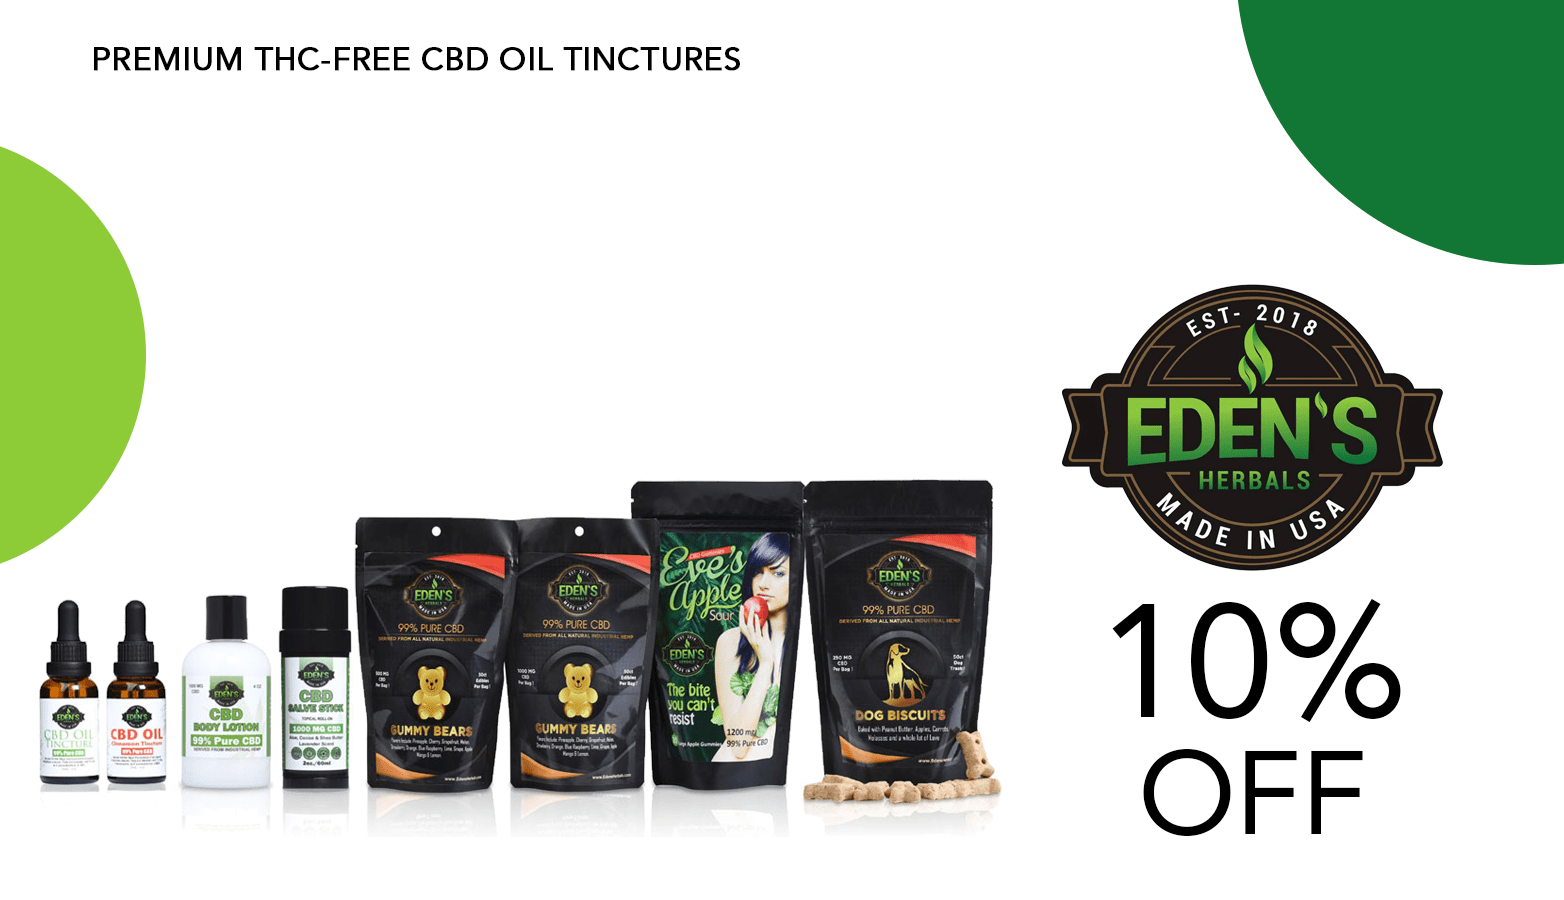 Eden's Herbals CBD Coupon Code Offer Website